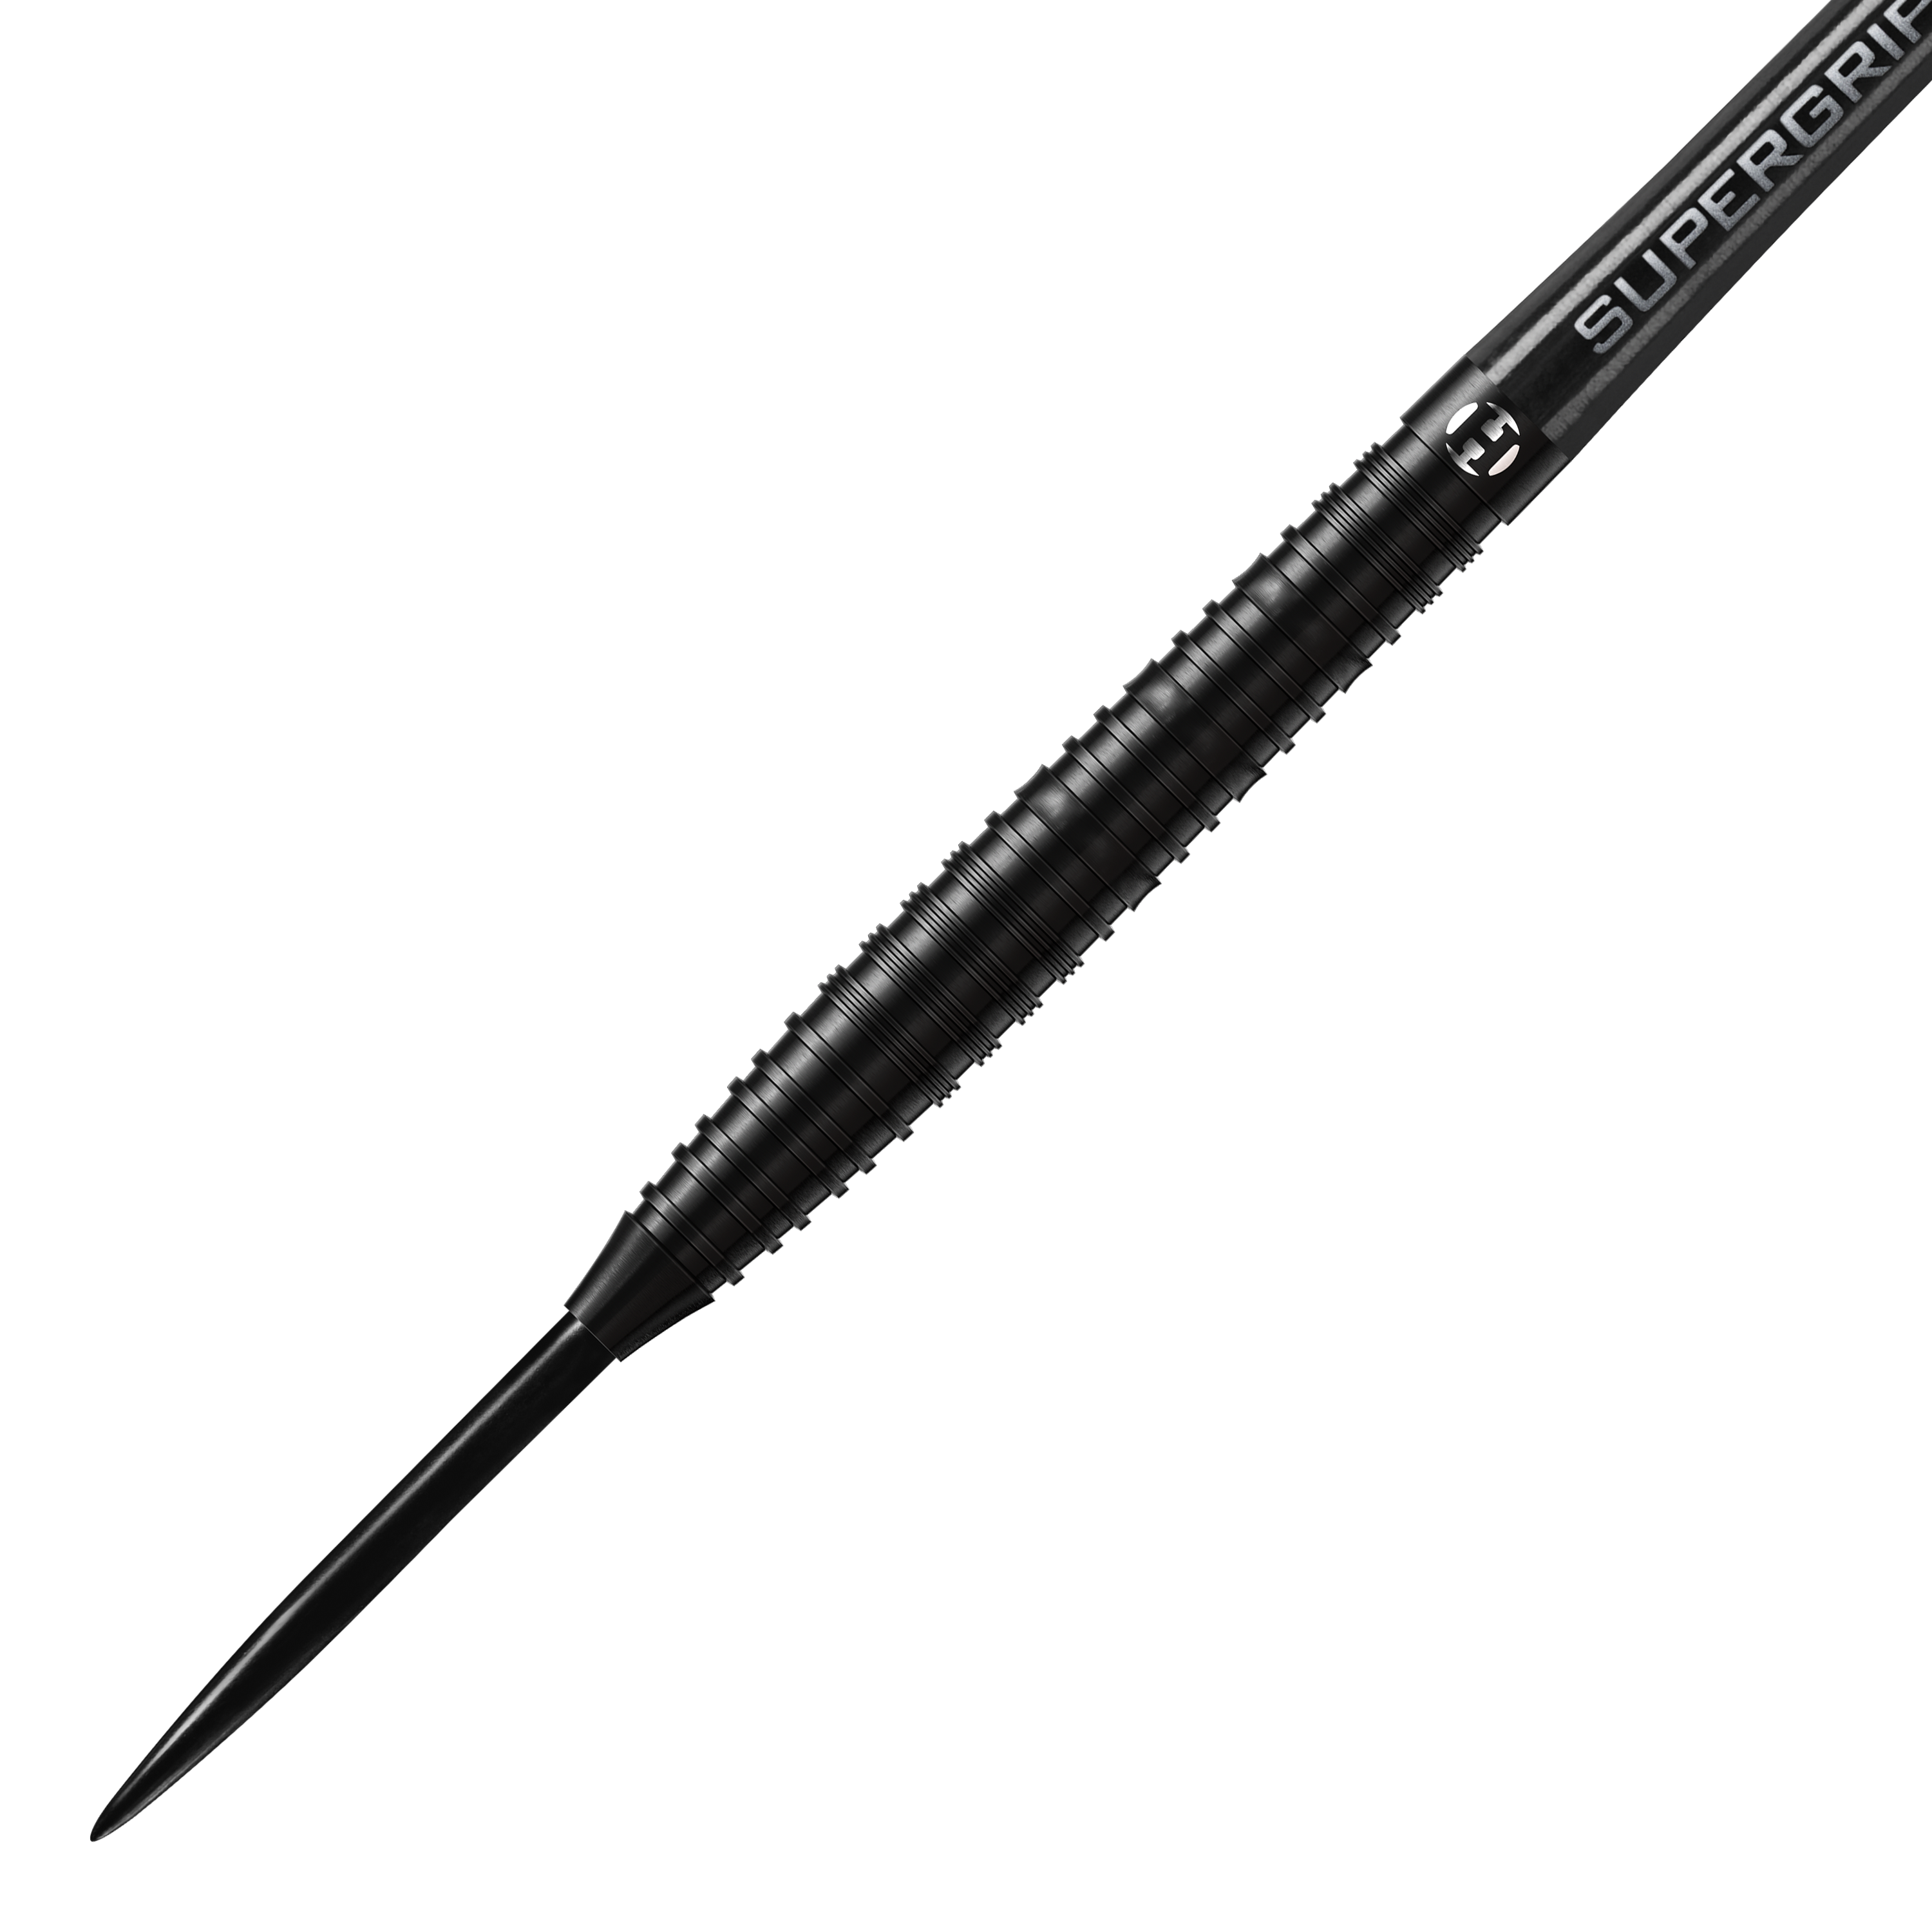 Harrows NX90 Black-Edition Steeldarts